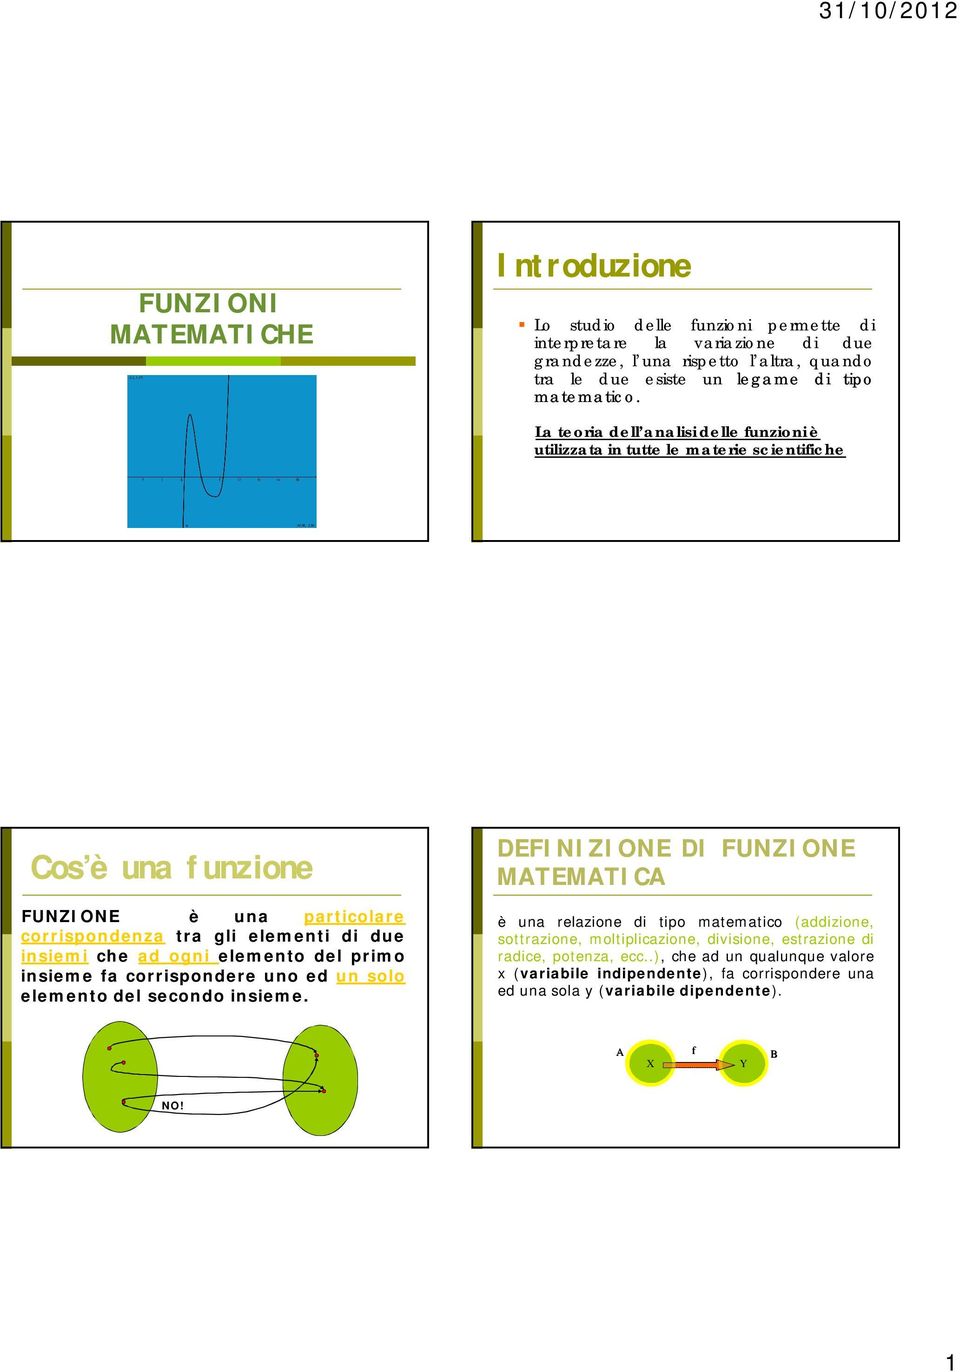 La teoria dell analisi delle funzioni è utilizzata in tutte le materie scientifiche Cos è una funzione FUNZIONE è una particolare corrispondenza tra gli elementi di due insiemi che ad ogni